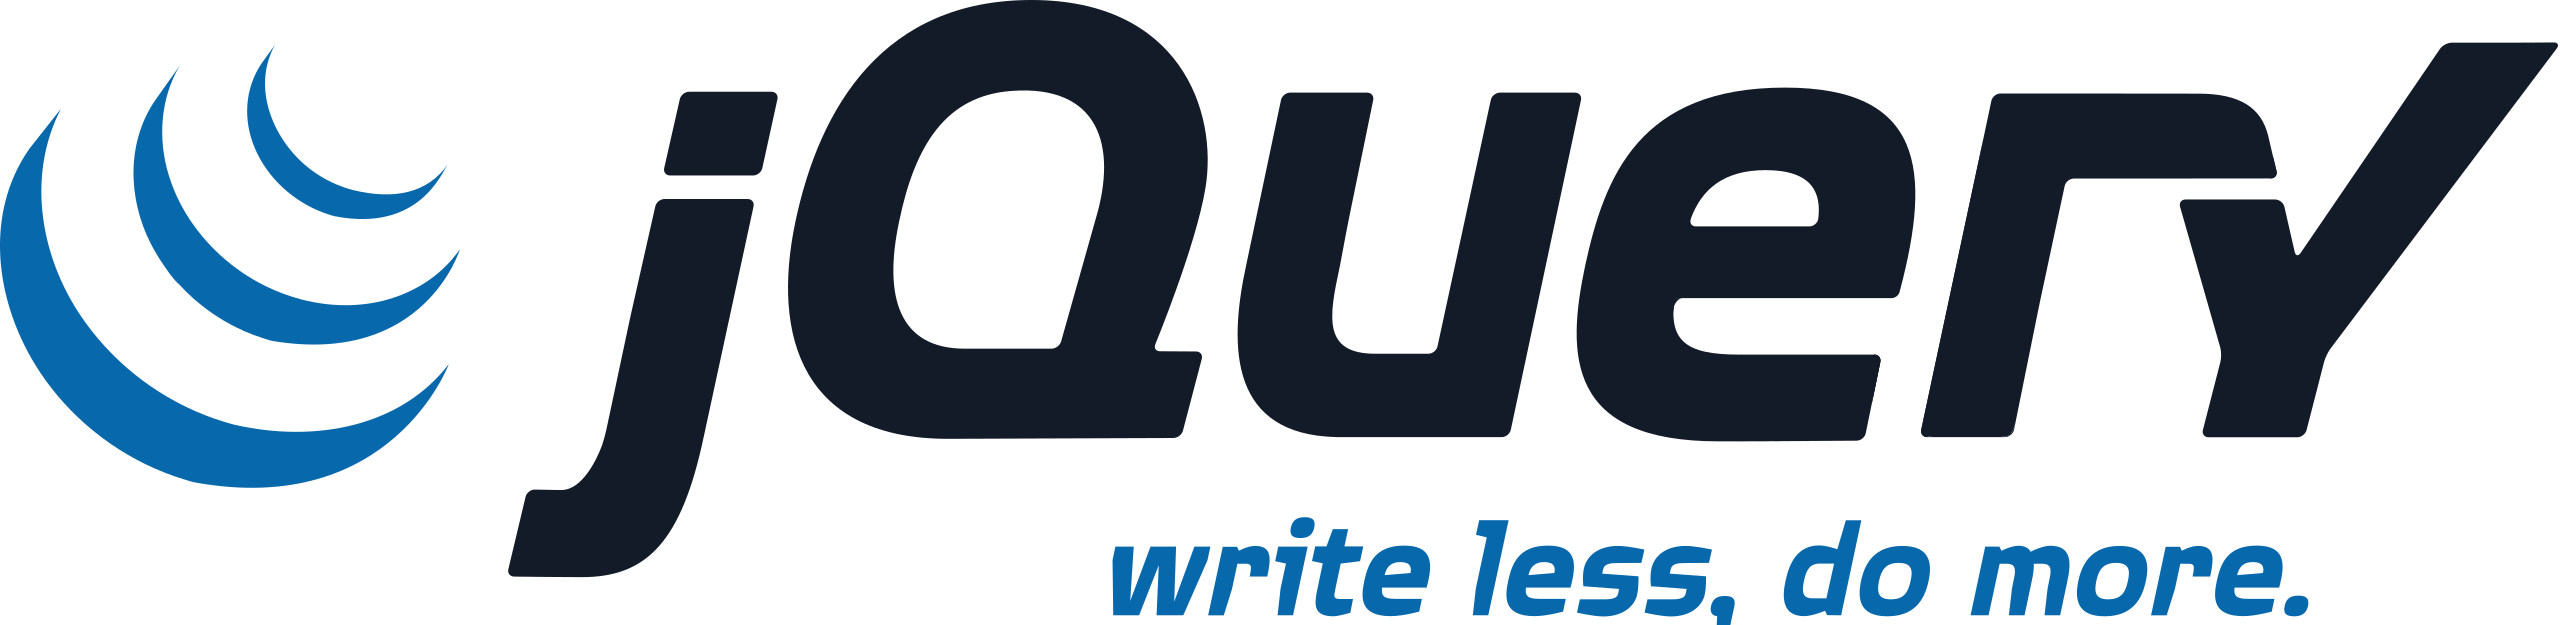 JQuery-Logo.svg